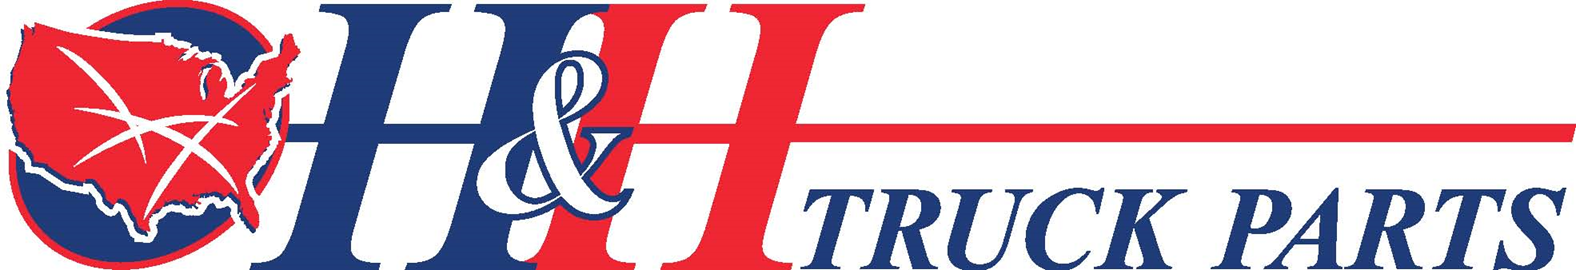 H H Truck Parts Llc Better Business Bureau Profile